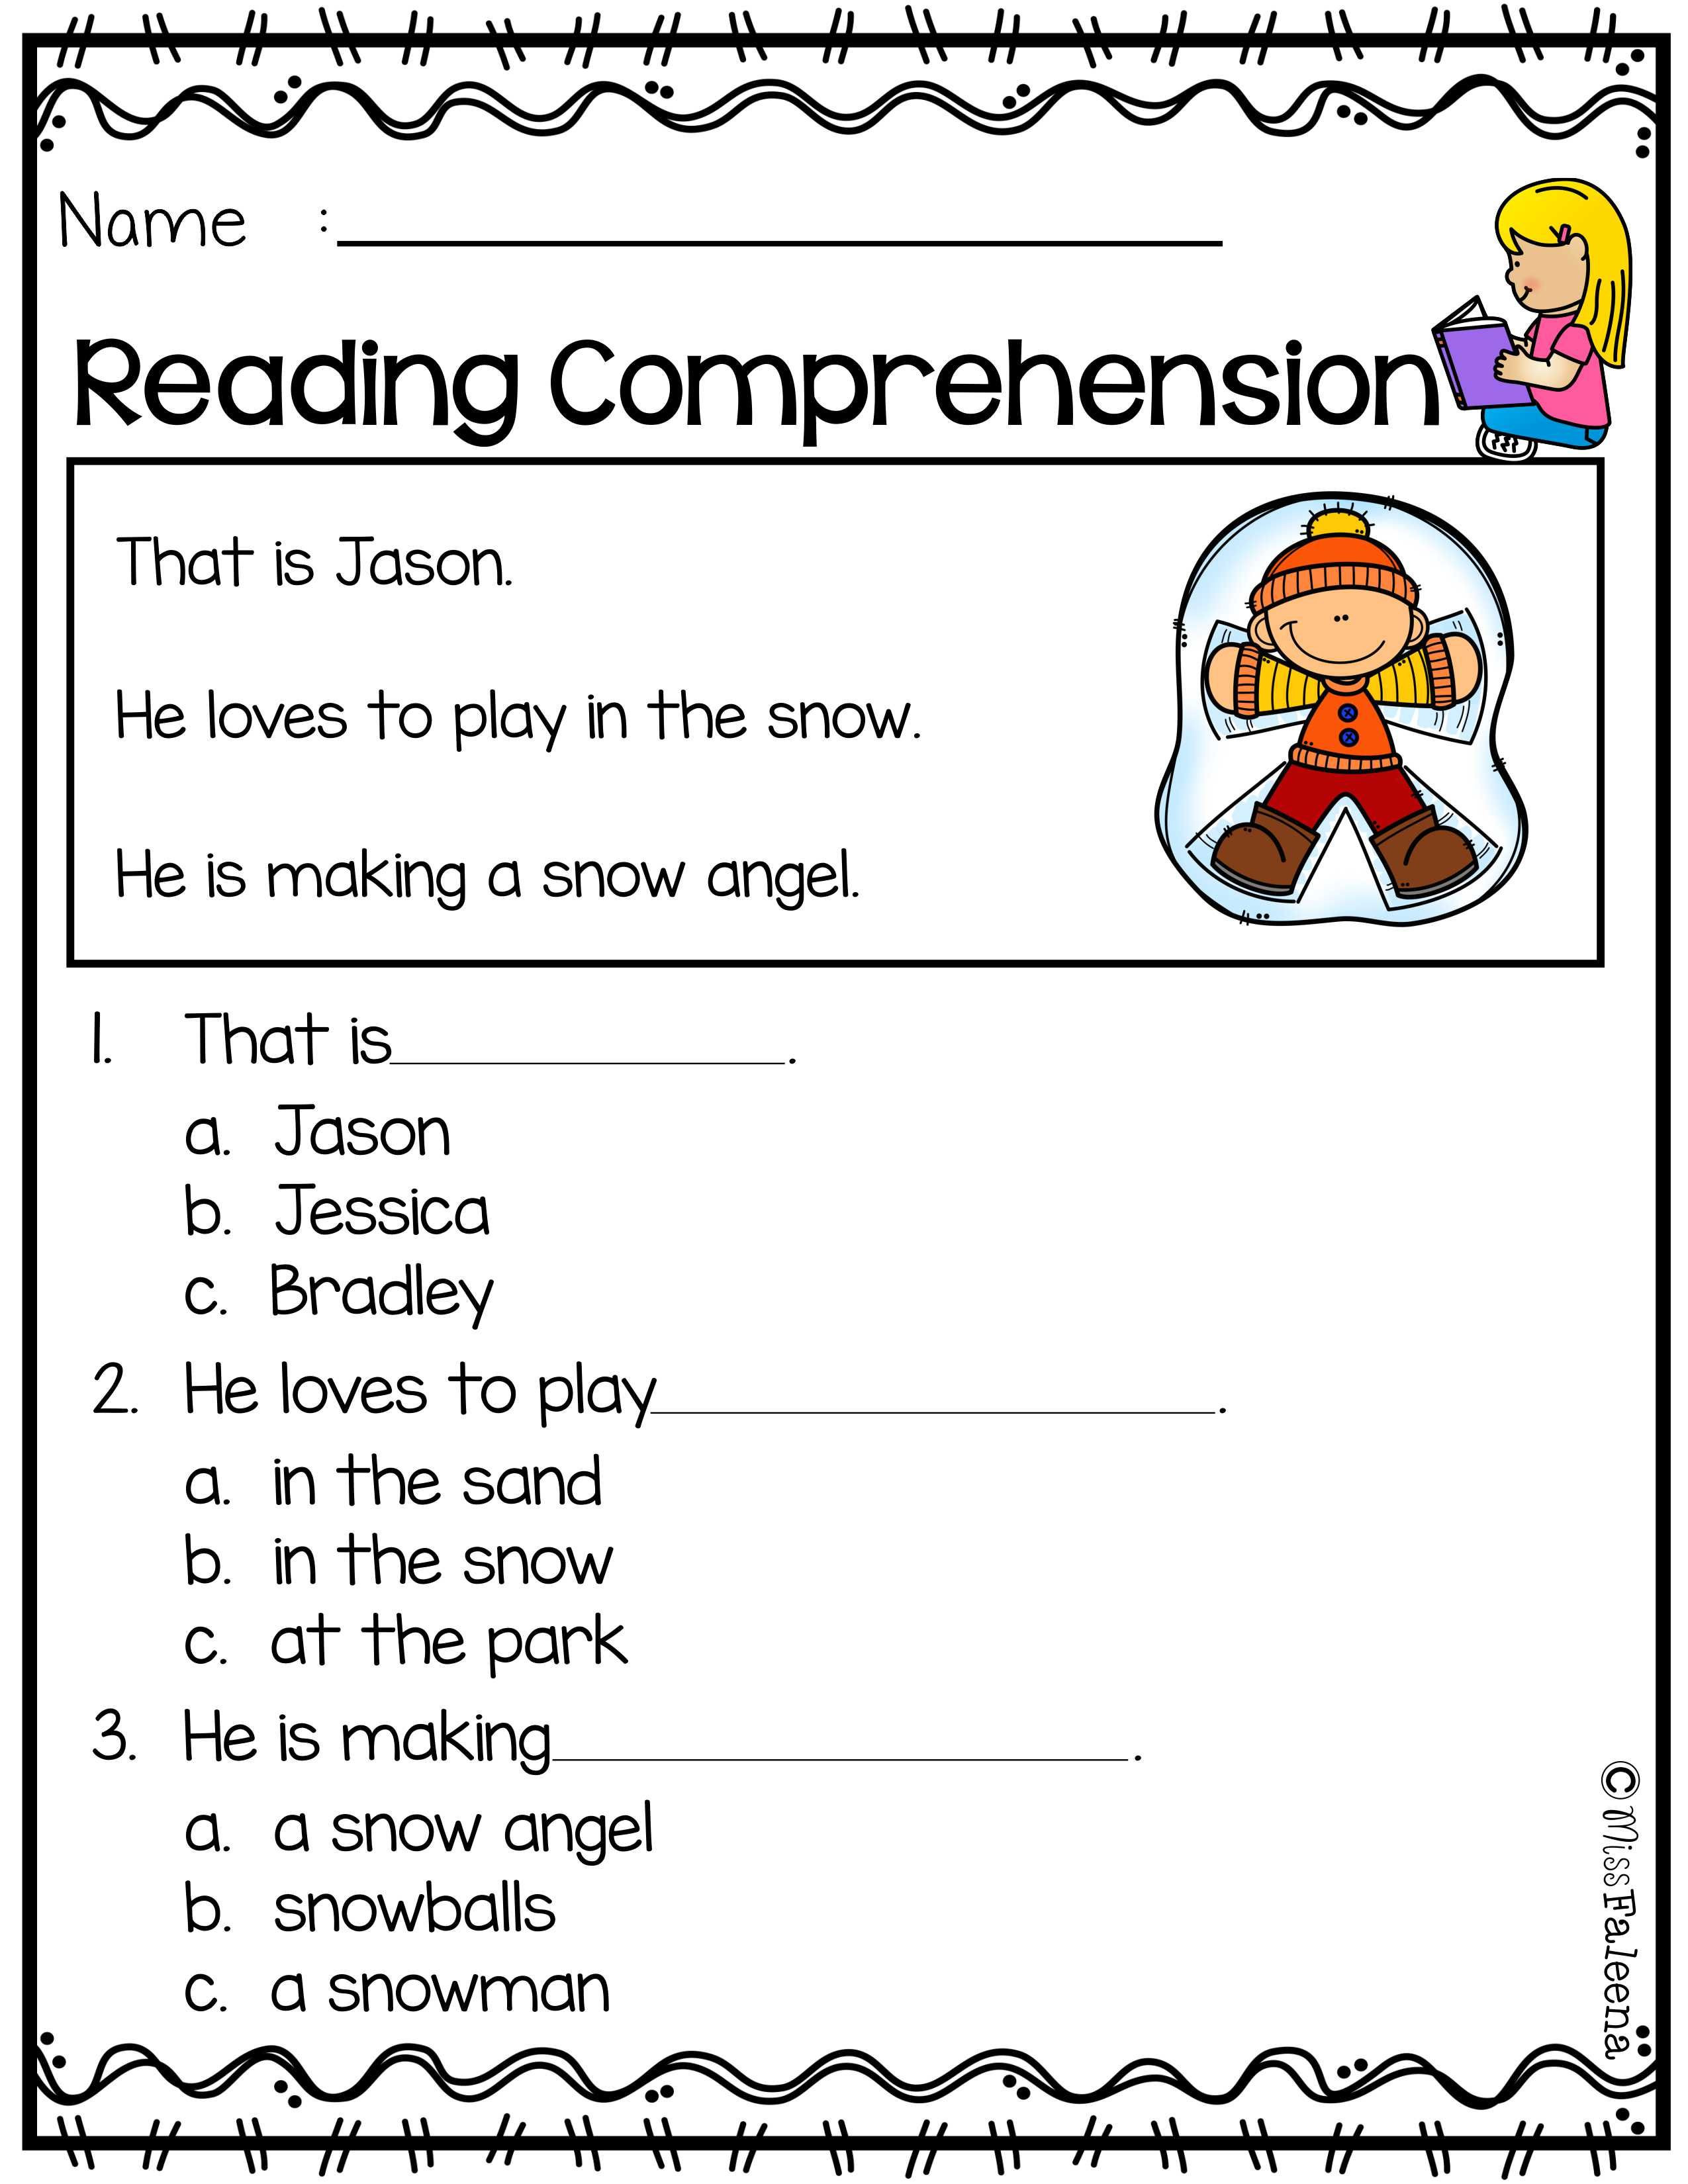 Comprehension Worksheets for Kindergarten Free Reading Prehension